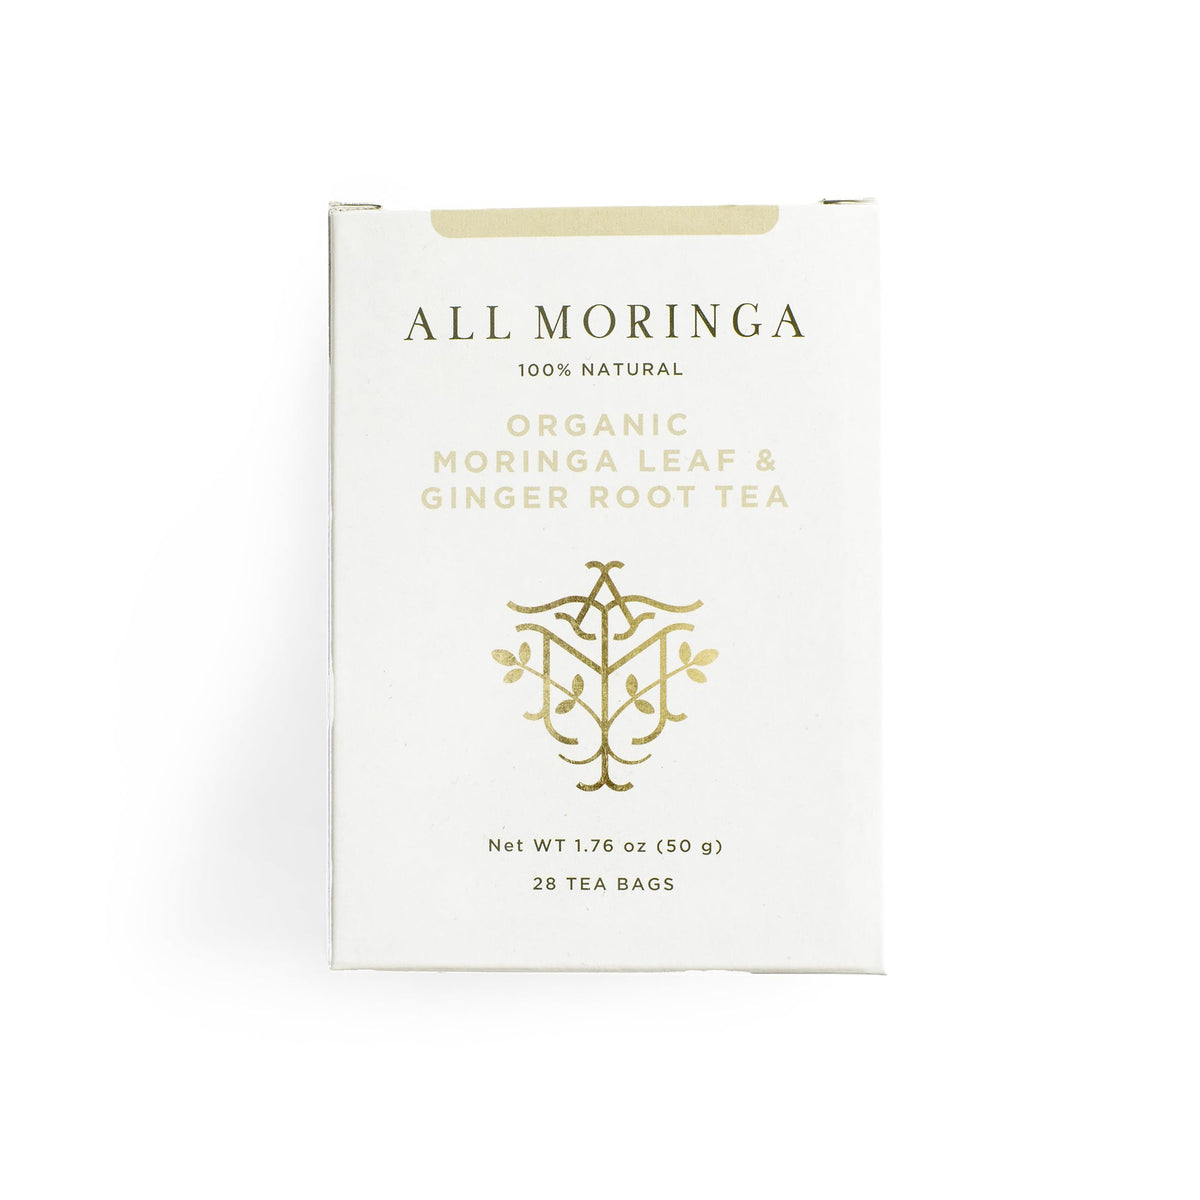 All Moringa - Organic Moringa Leaf and Ginger Root Tea Caffein Free Herbal Tea 28 Tea Bags